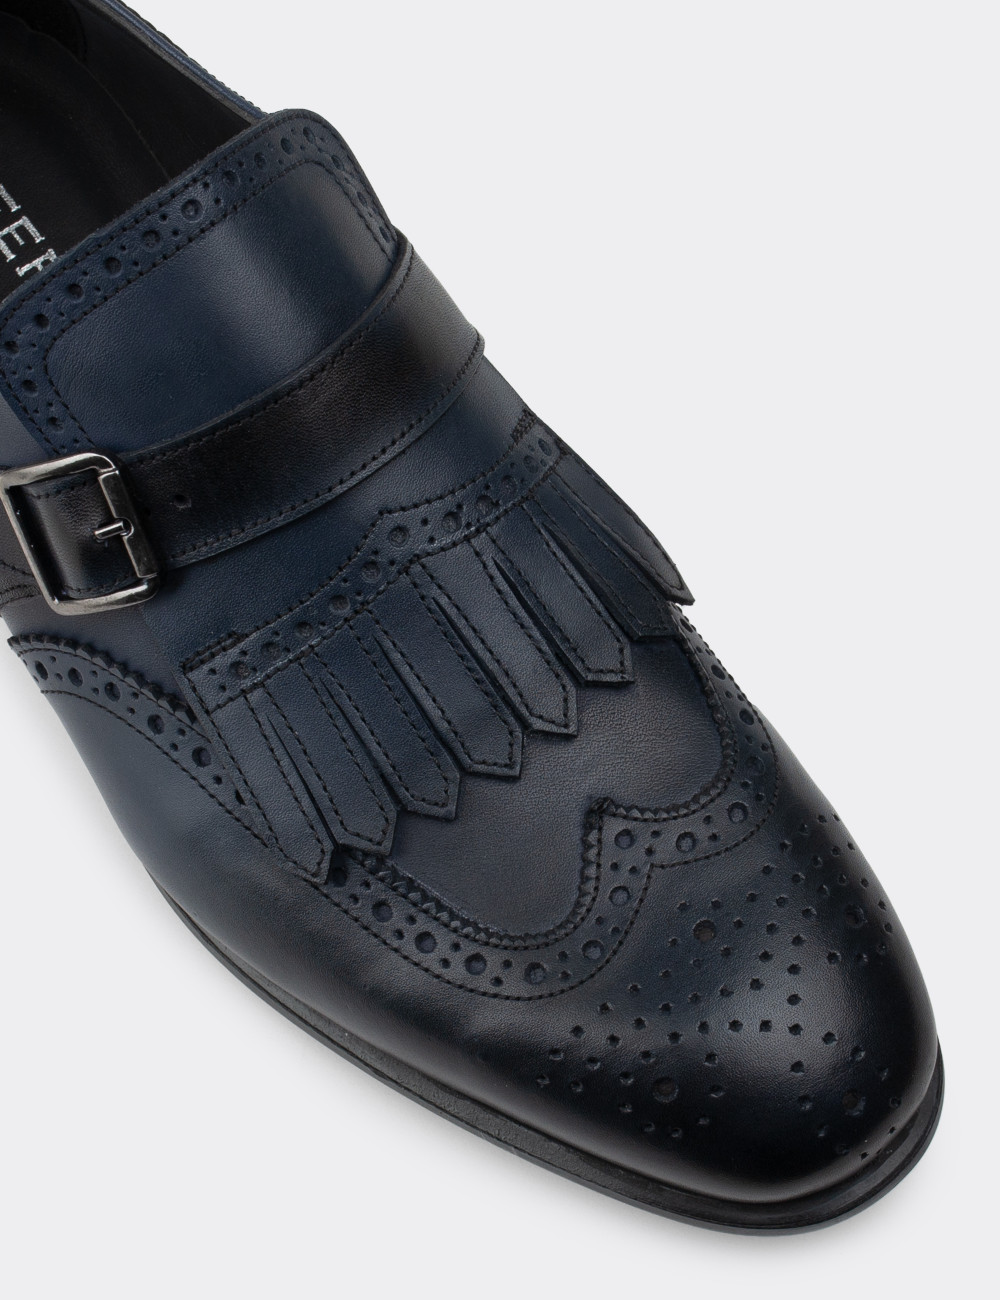 Hakiki Deri Lacivert Özel Üretim Klasik Erkek Ayakkabı - 01680MLCVC03